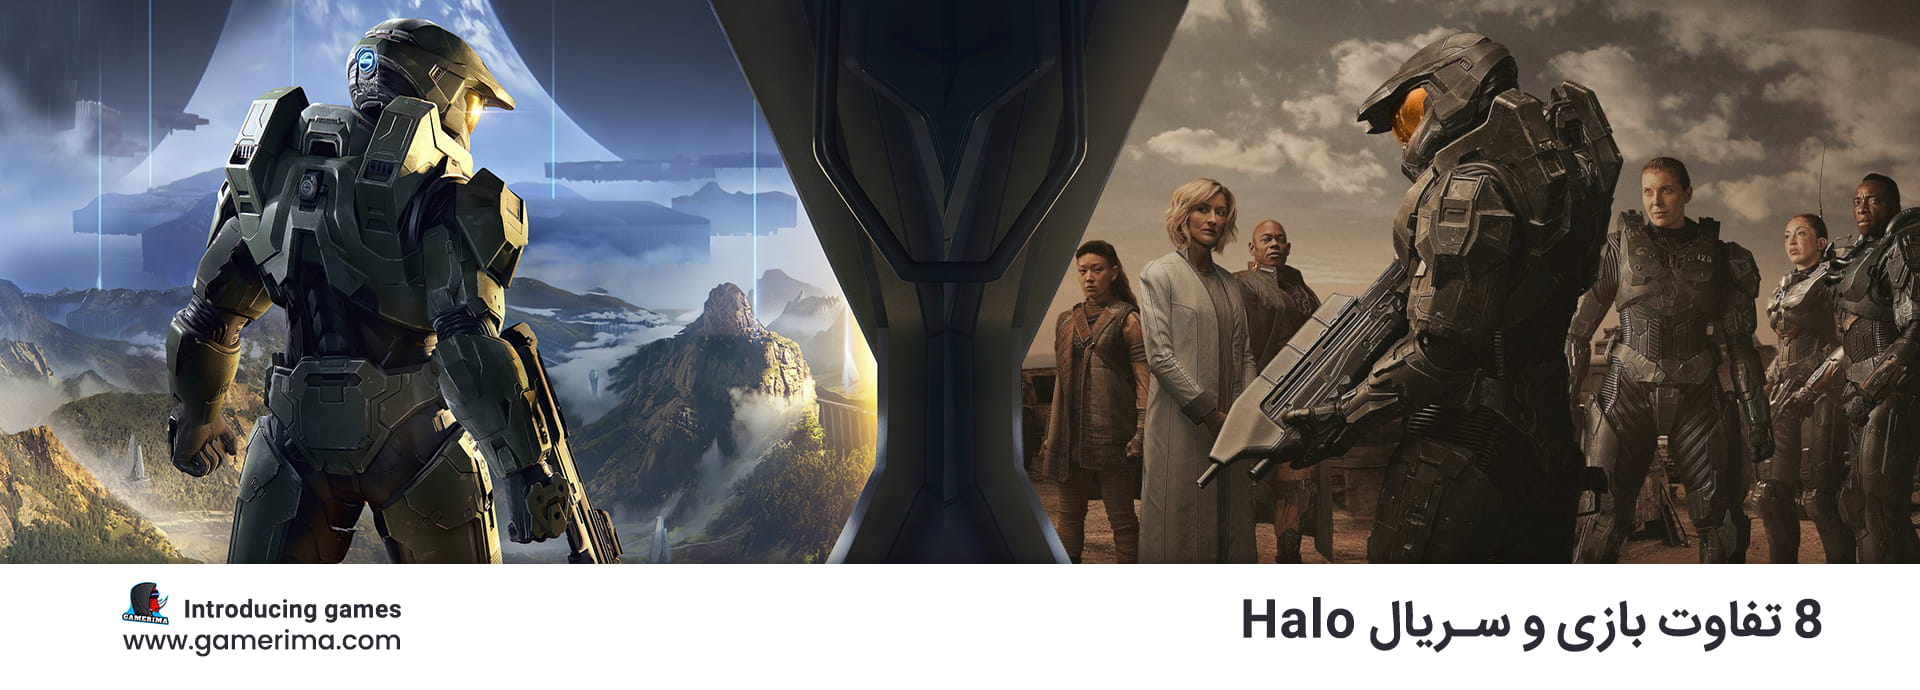 ۸ تفاوت مهم بازی و سریال Halo